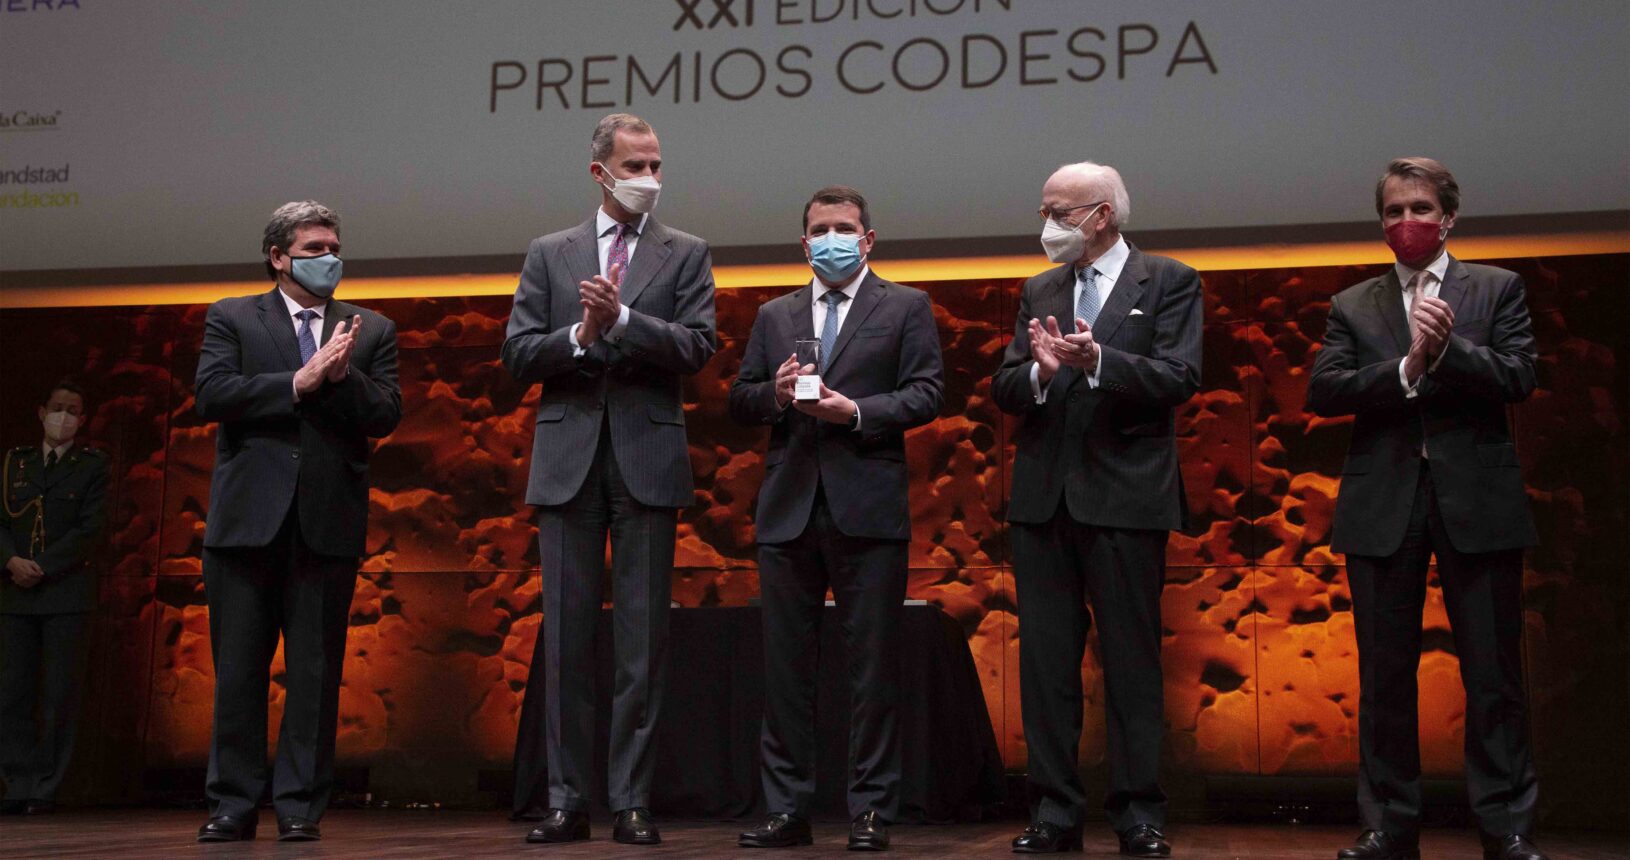 XXI Edición Premios CODESPA (2022)_5